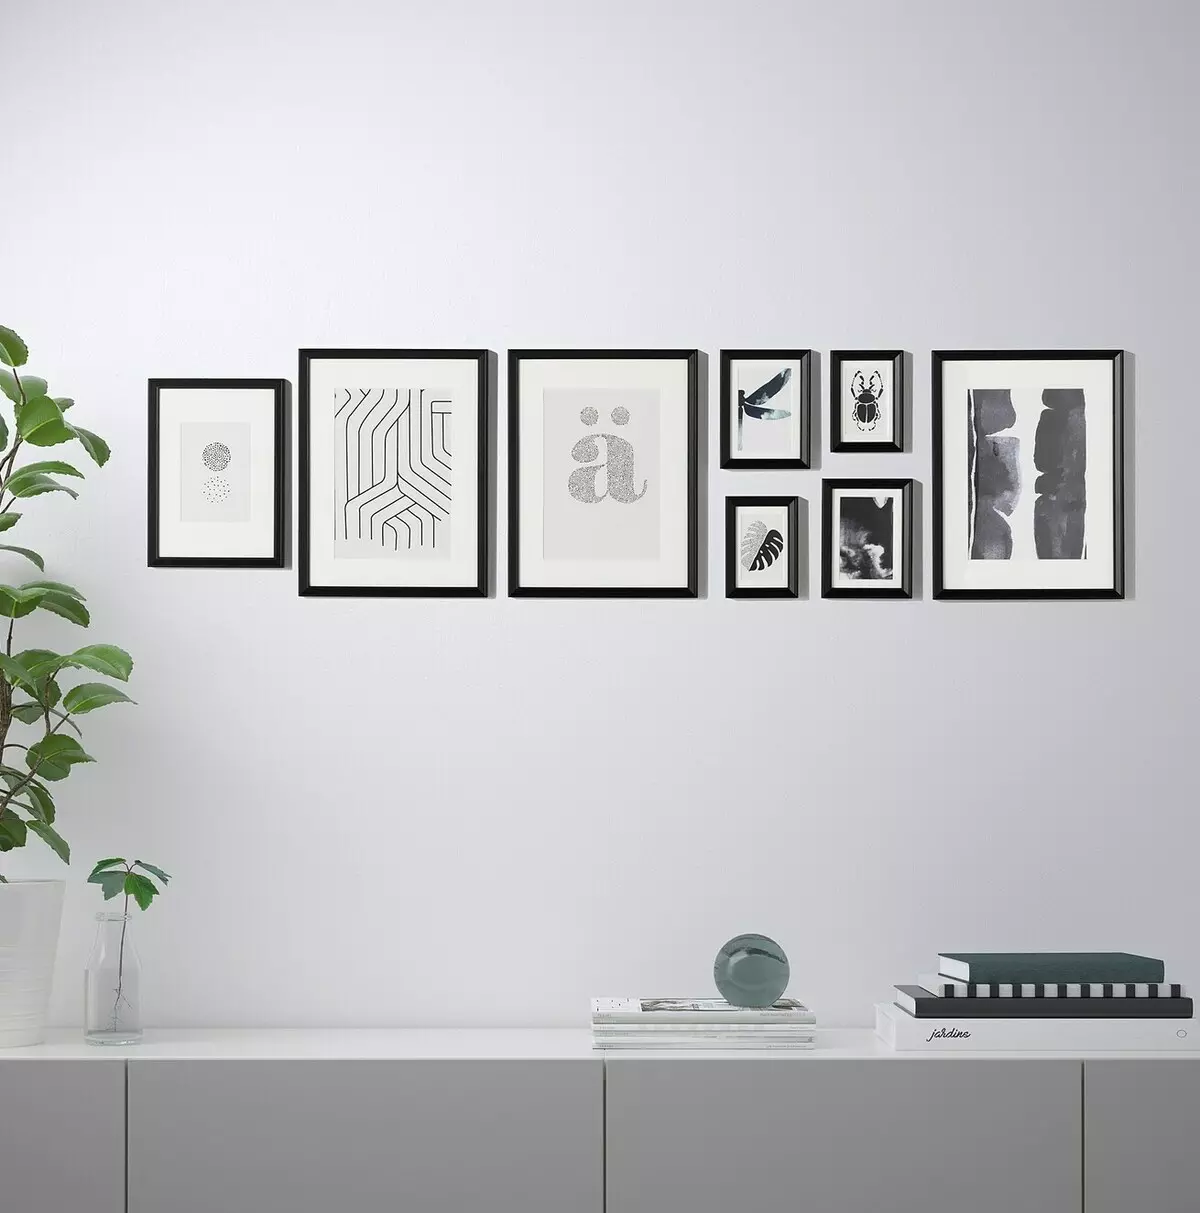 Ikea Posters: Pariksa poster kanggo témbok sareng pilihanna pikeun interior, pigura sareng pengusaha, postingan 500 sareng ukuranana sanés 20793_14